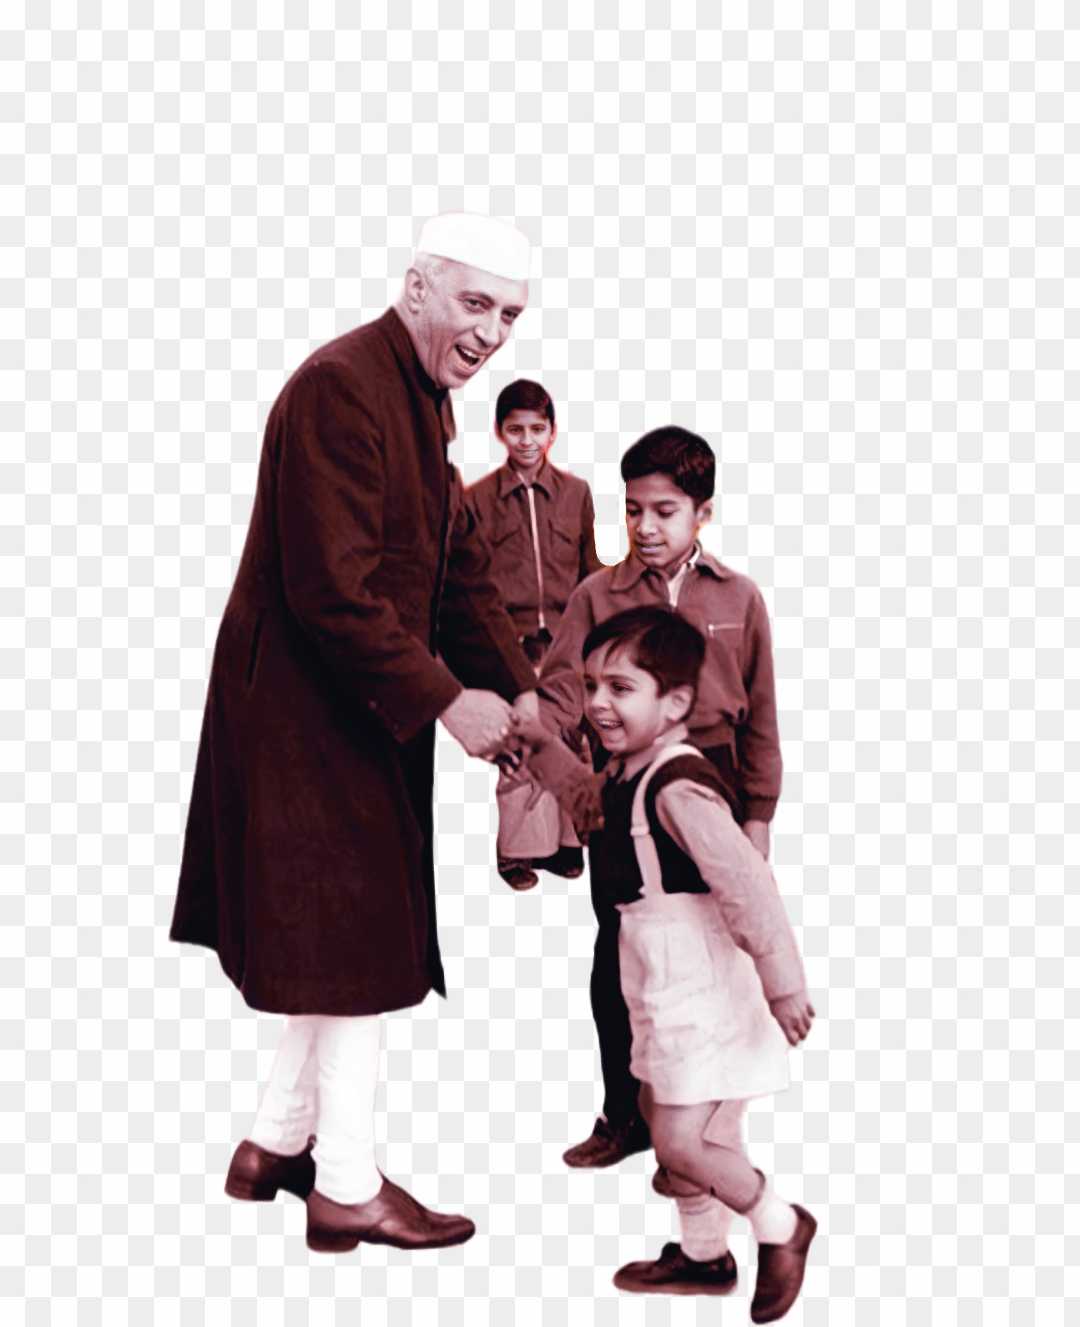 Pandit Jawaharlal Nehru HD PNG images_ pandit Jawaharlal Nehru children PNG images free download